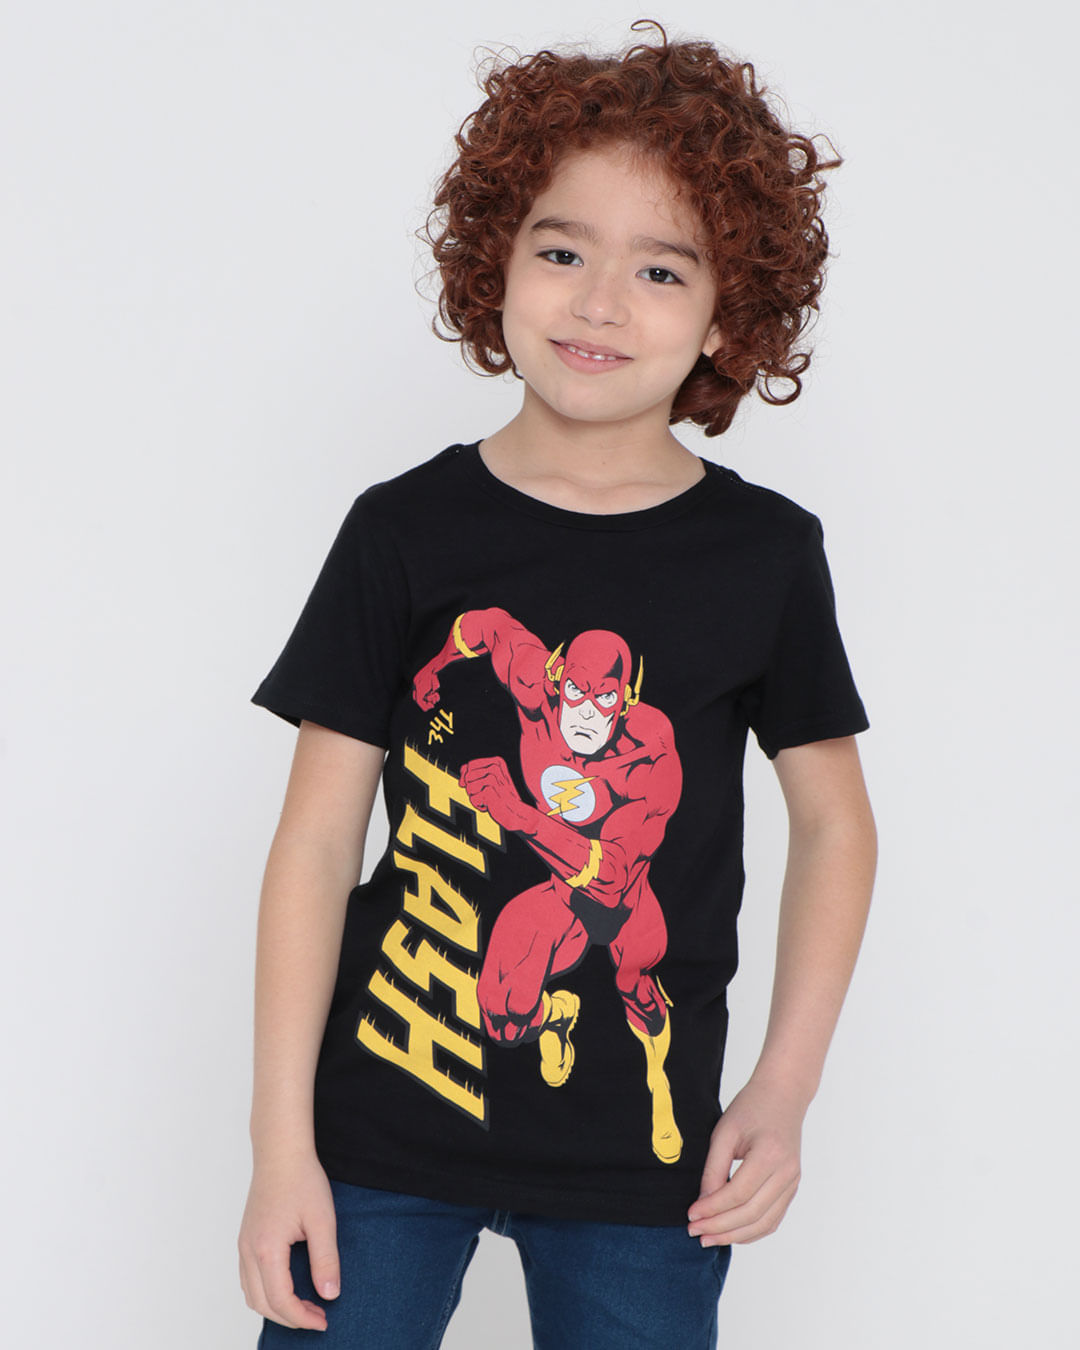 Camiseta-Infantil-Liga-da-Justica-Flash-Preta